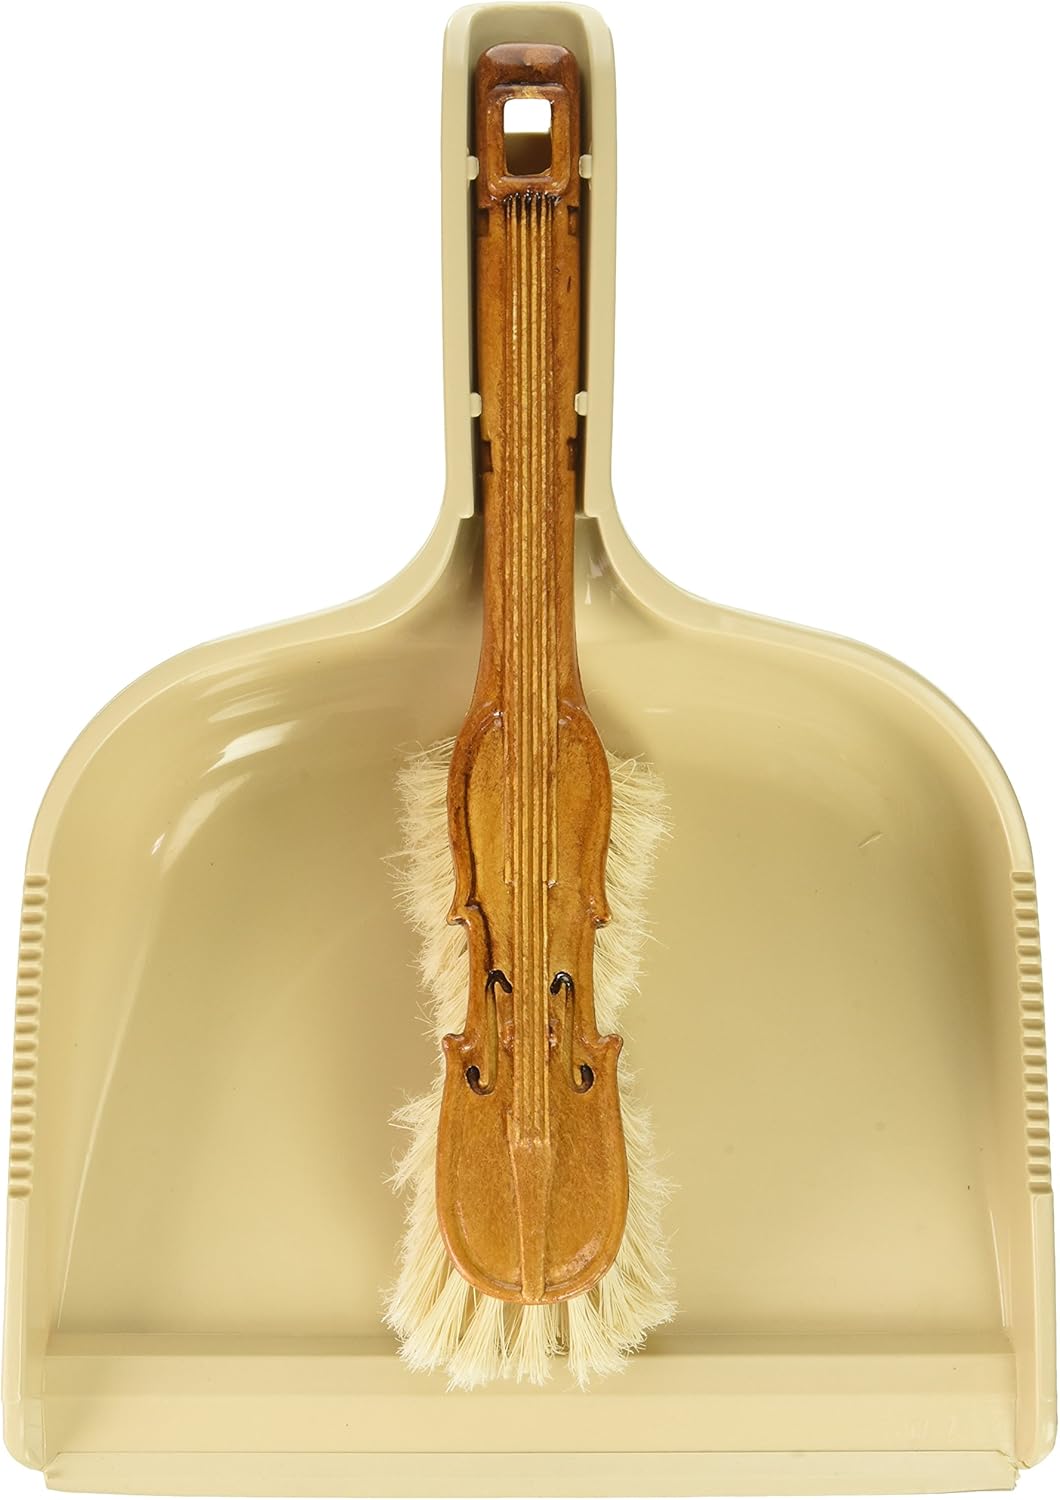 Juego de pinceles únicos con forma de recogedor y violín, beige, hecho en